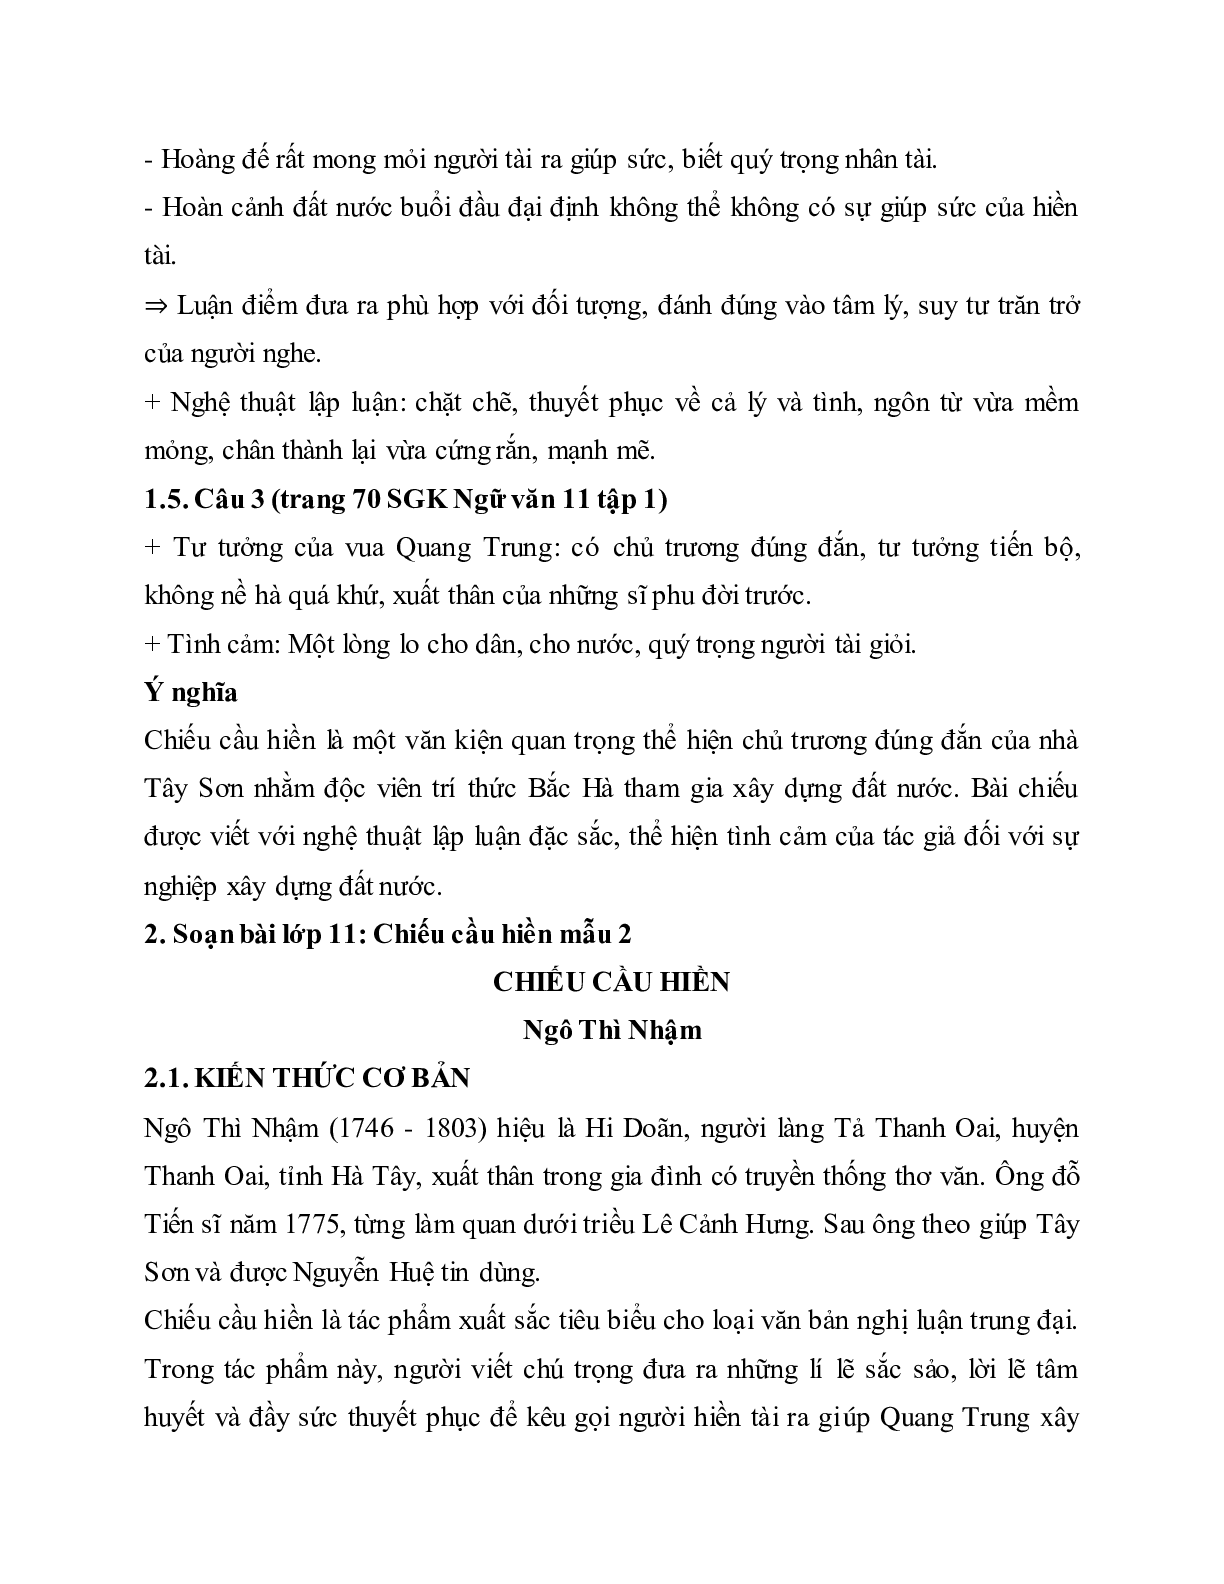 Soạn bài Chiếu cầu hiền - ngắn nhất Soạn văn 11 (trang 2)